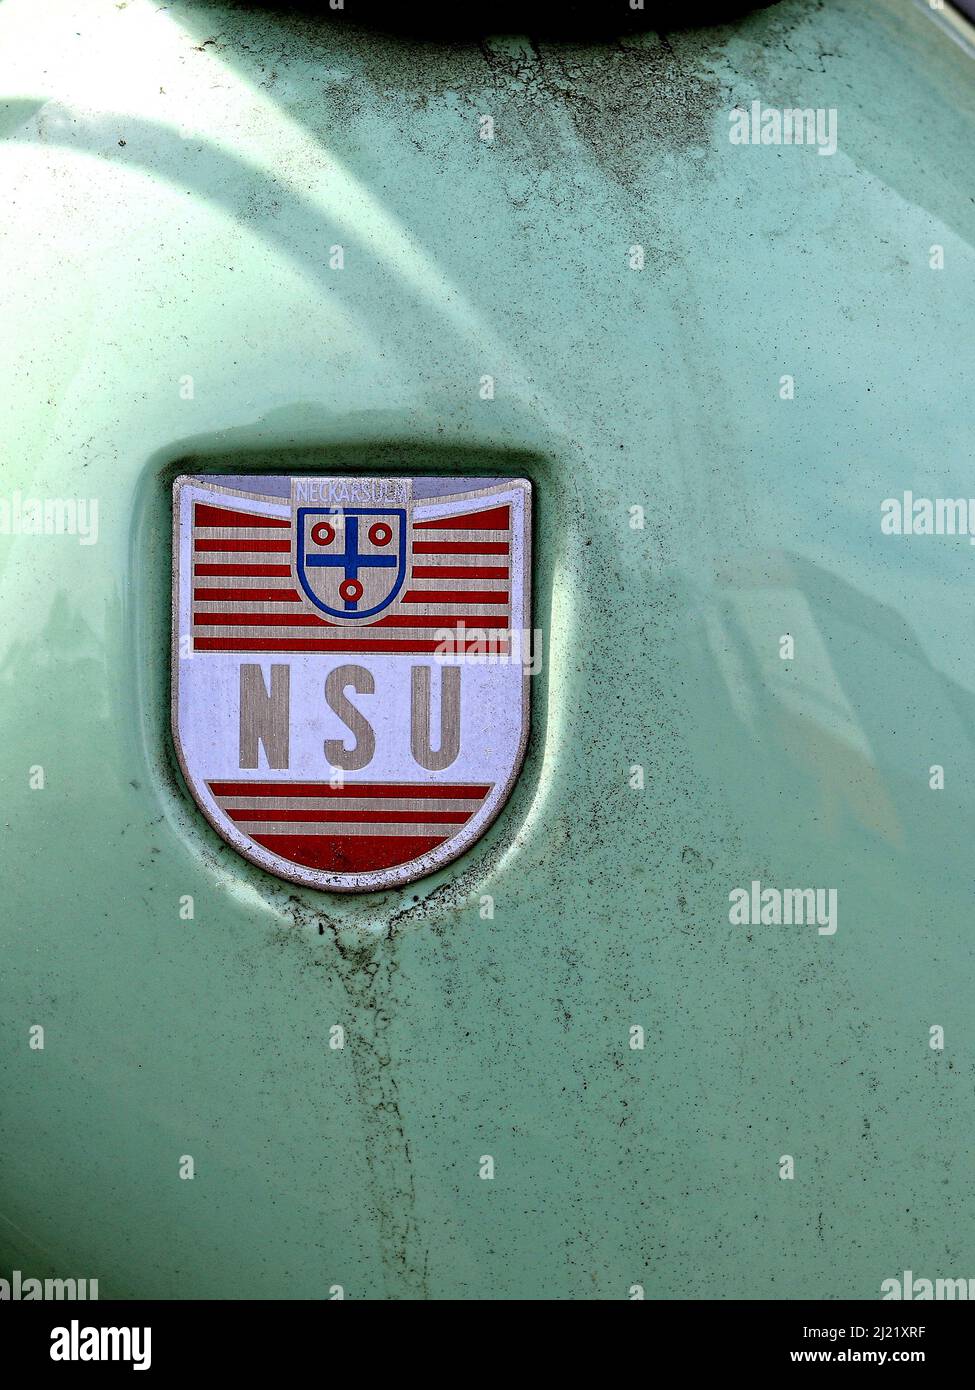 nsu era un marchio di motori dalla germania il logo della società è su un cofano verde gli stabilimenti della nsu erano nella germania meridionale la società audi più tardi de Foto Stock